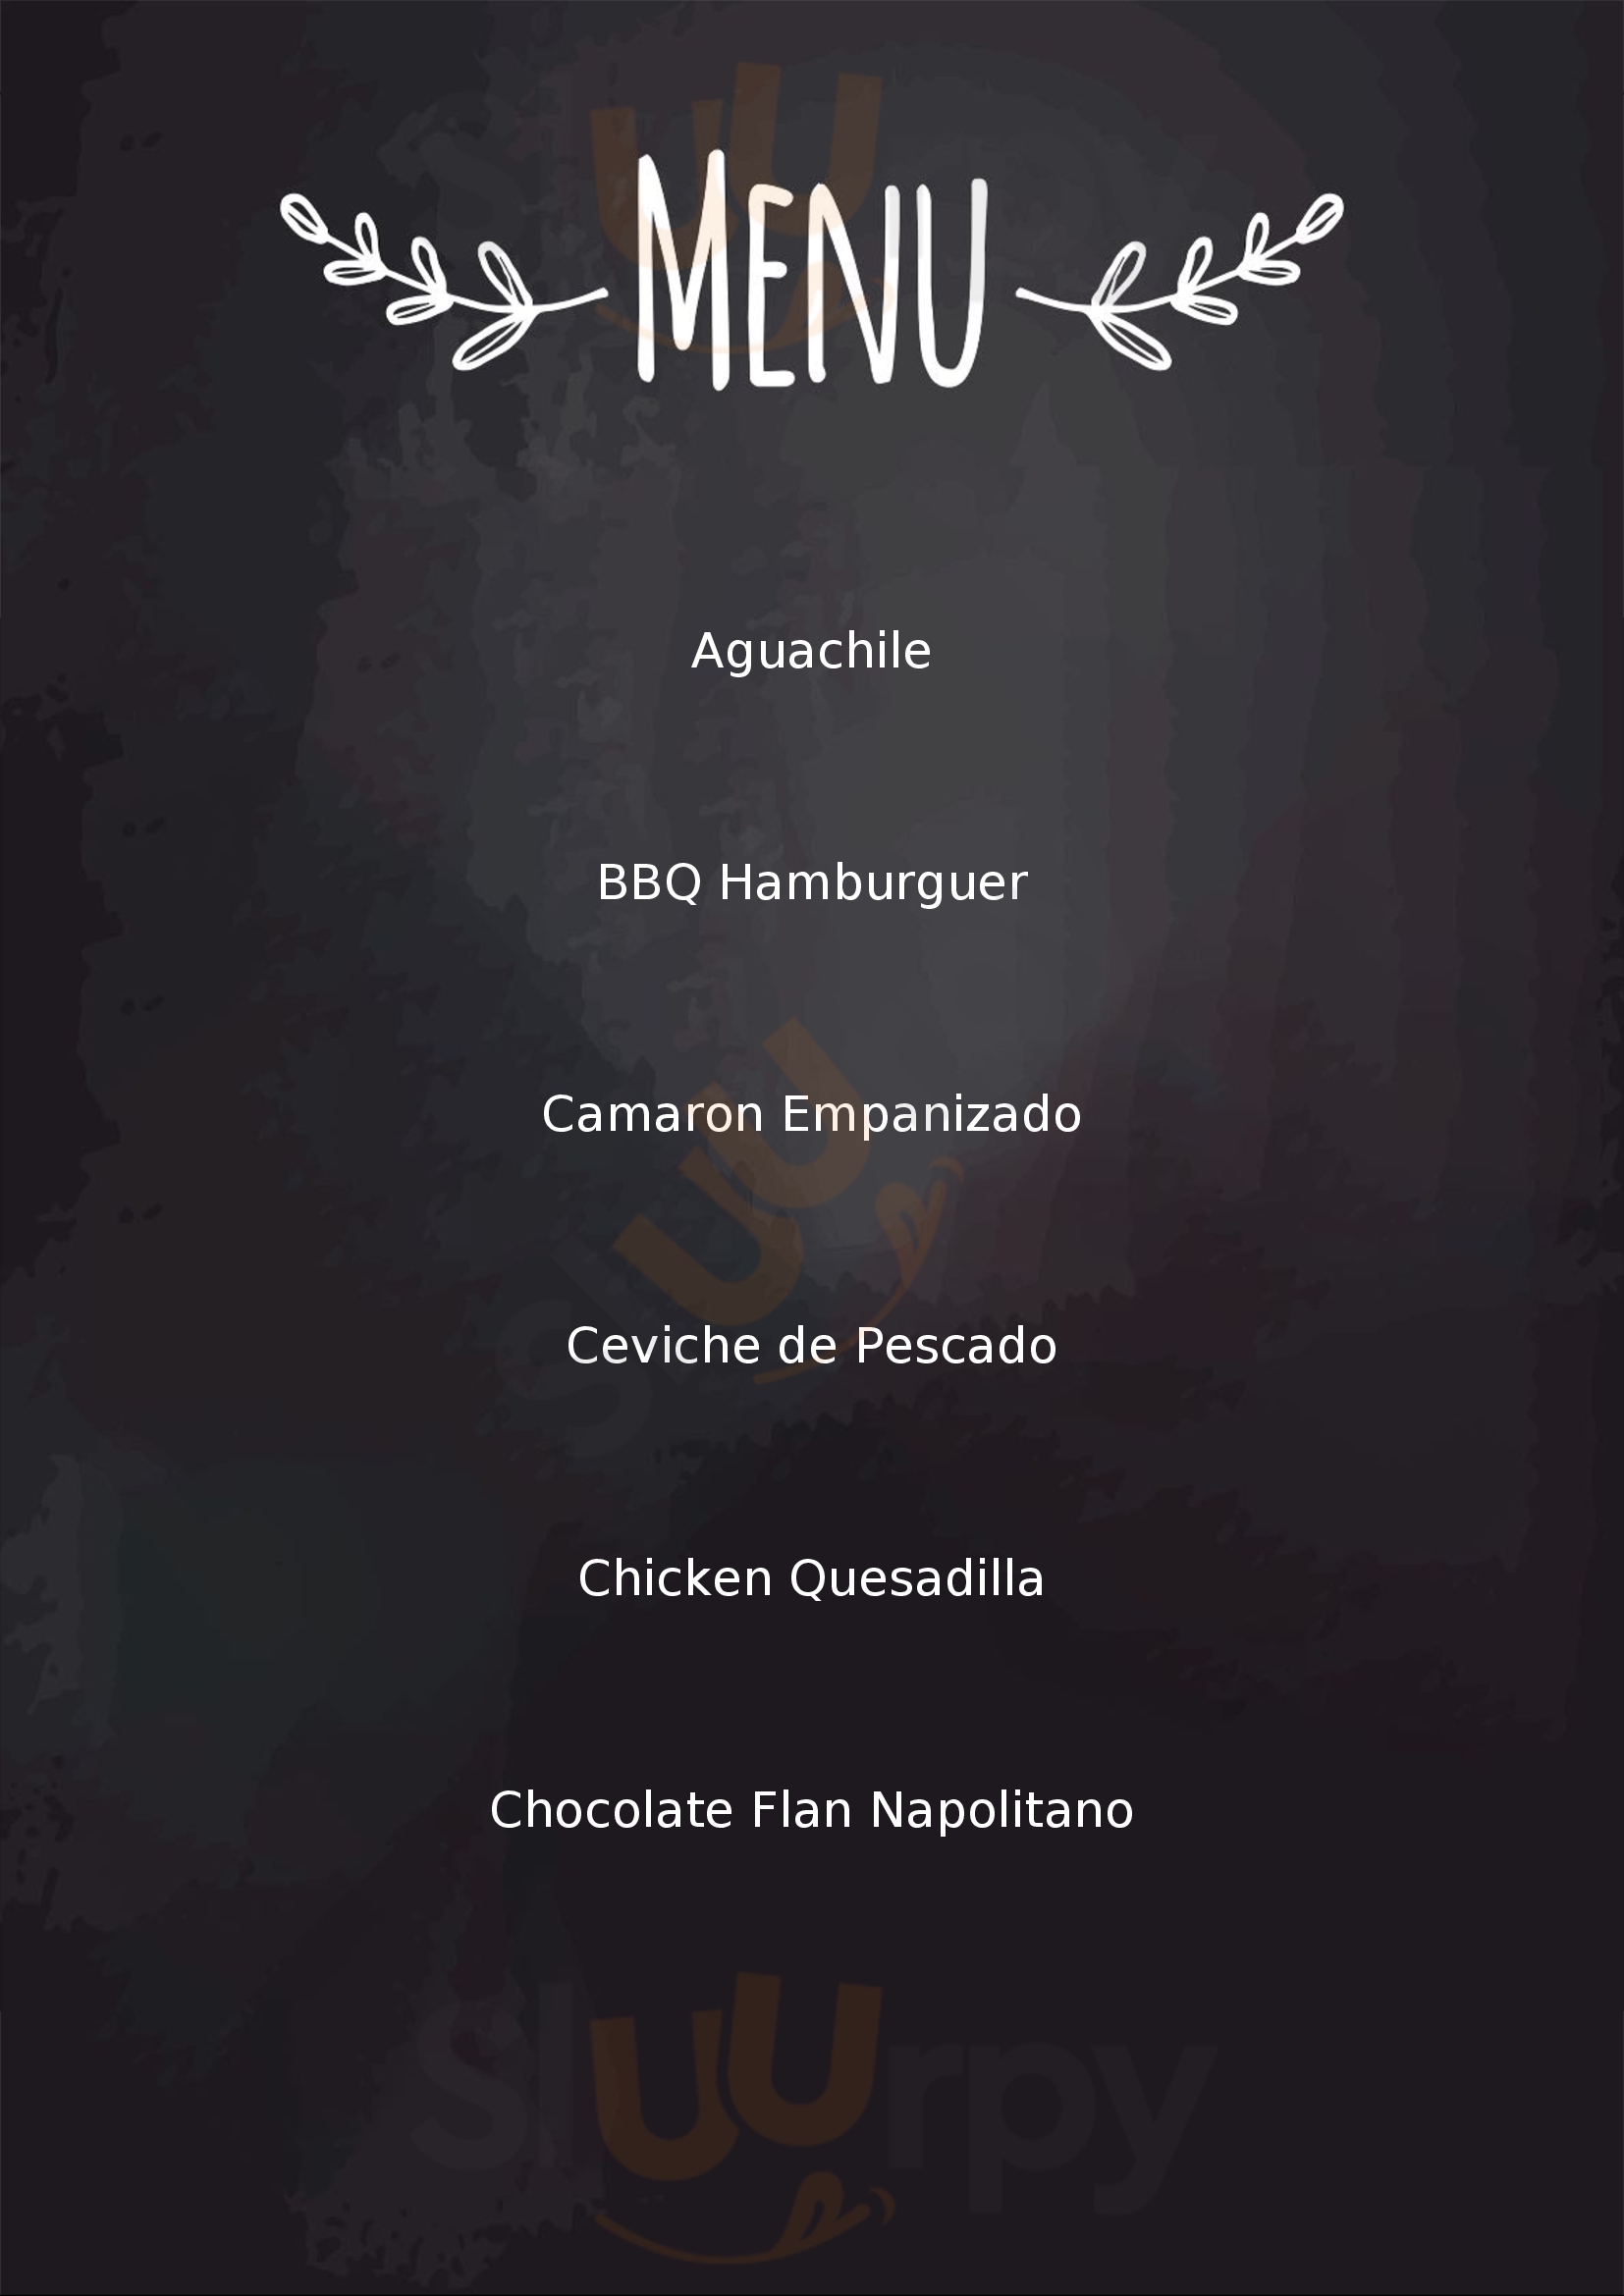 Providencia Restaurante Bar & Grill La Ribera Menu - 1